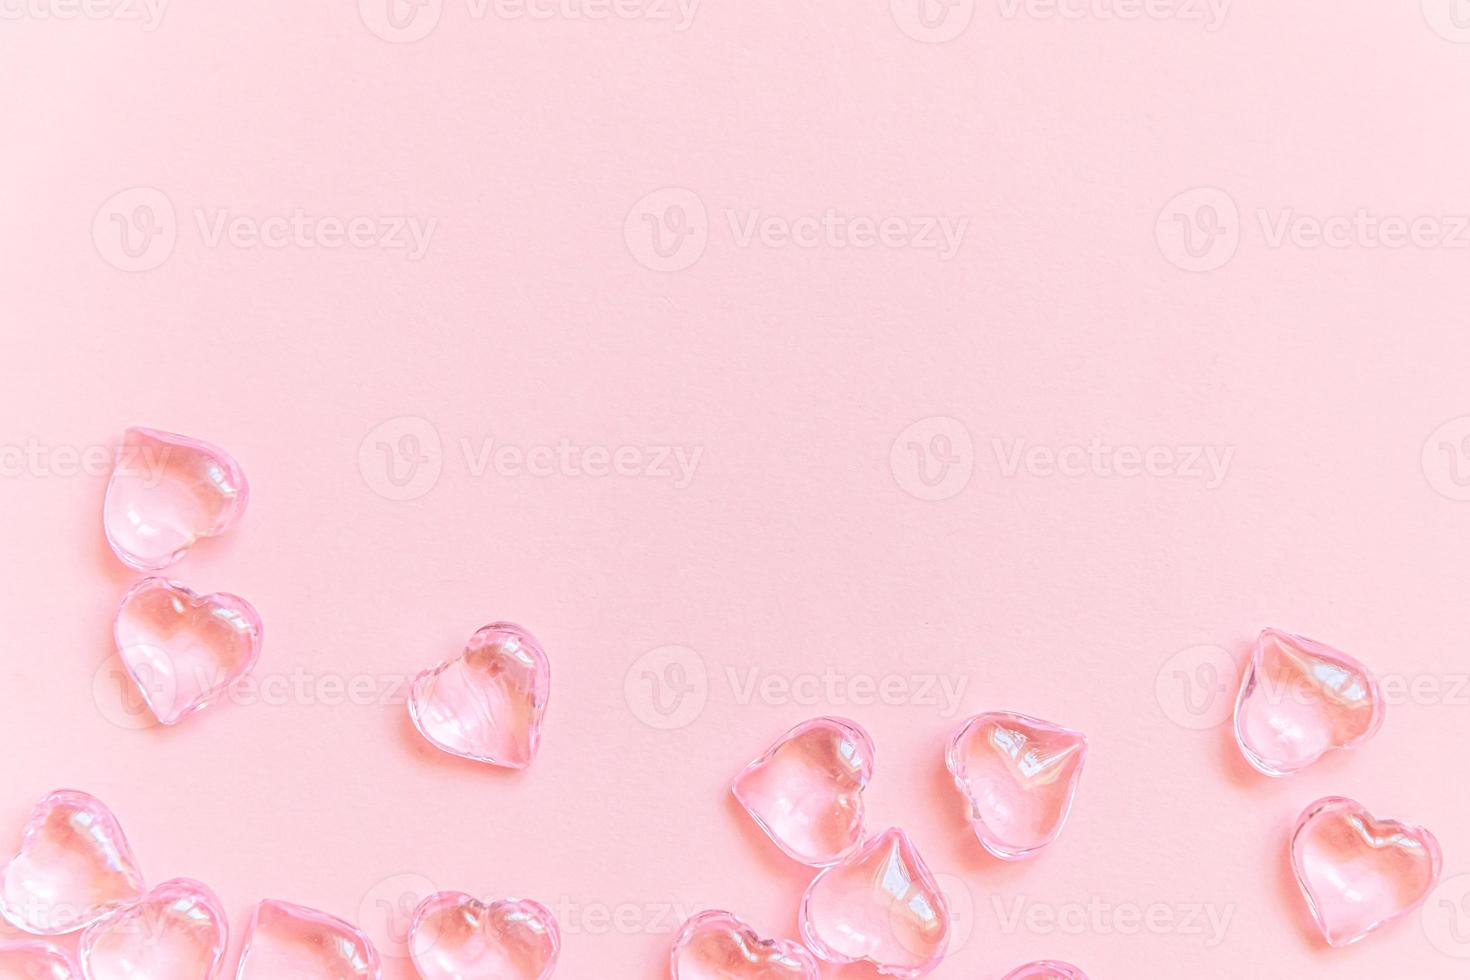 st. alla hjärtans dag koncept. många rosa hjärtan isolerade på rosa pastell bakgrund. vykort banner på alla hjärtans dag. kärleksdatum kärlekskrank bröllopsromantik symbol. ovanifrån platt låg, kopiera utrymme foto